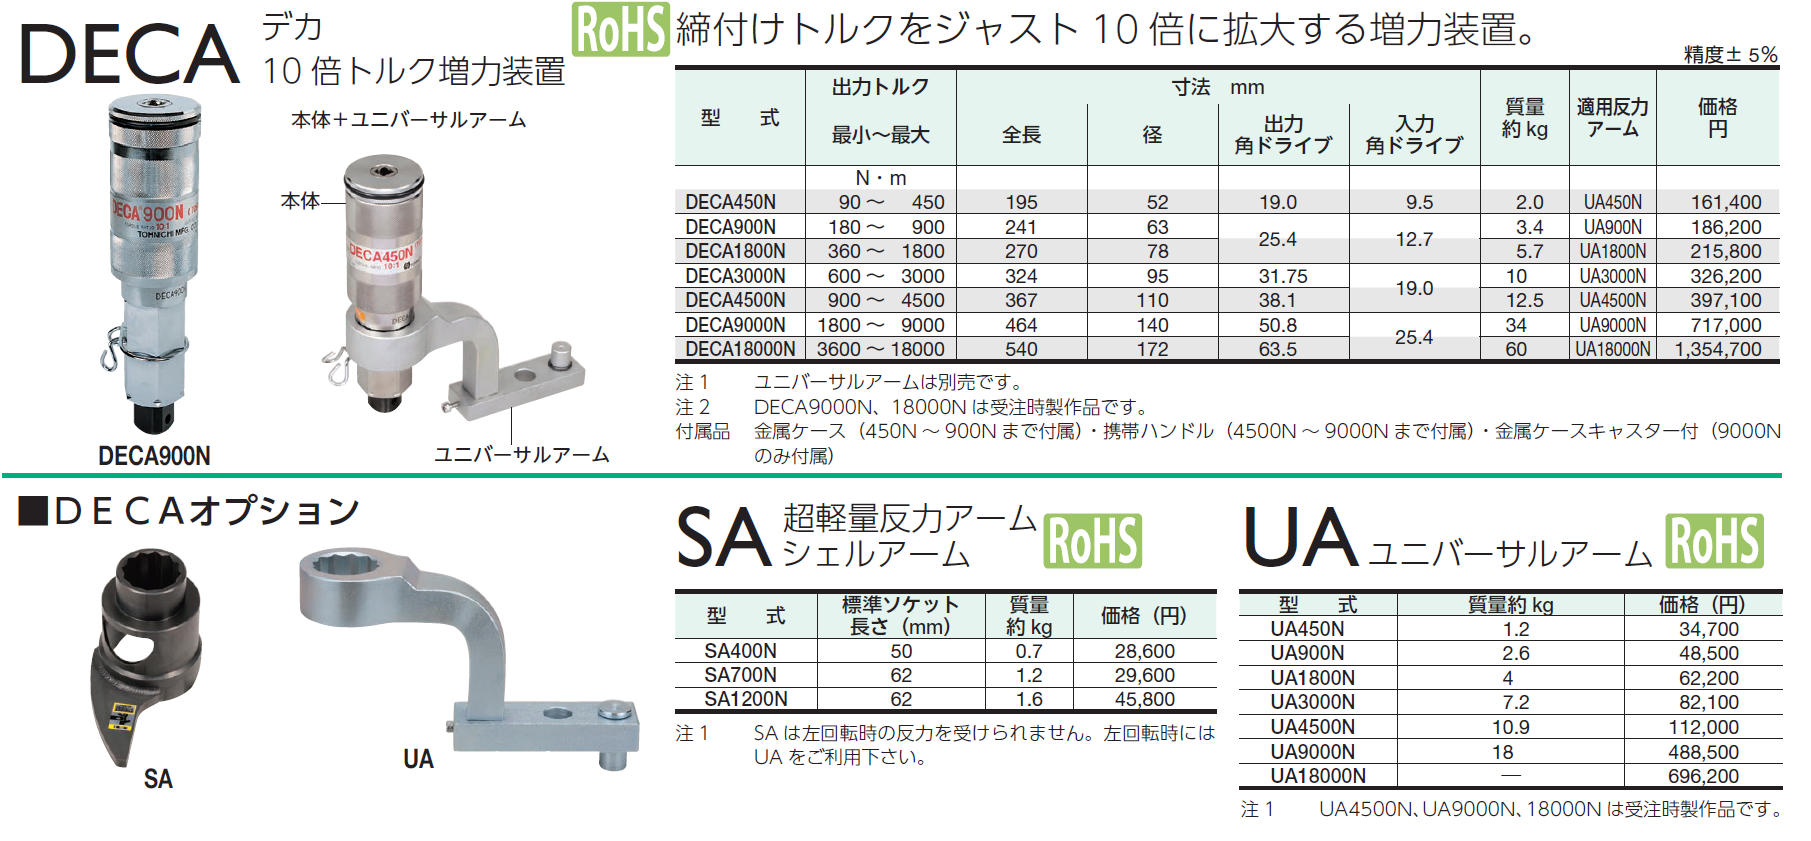 東日製作所 UA1800N UA型反力アーム AP､DAP型用万能型反力アームの通販